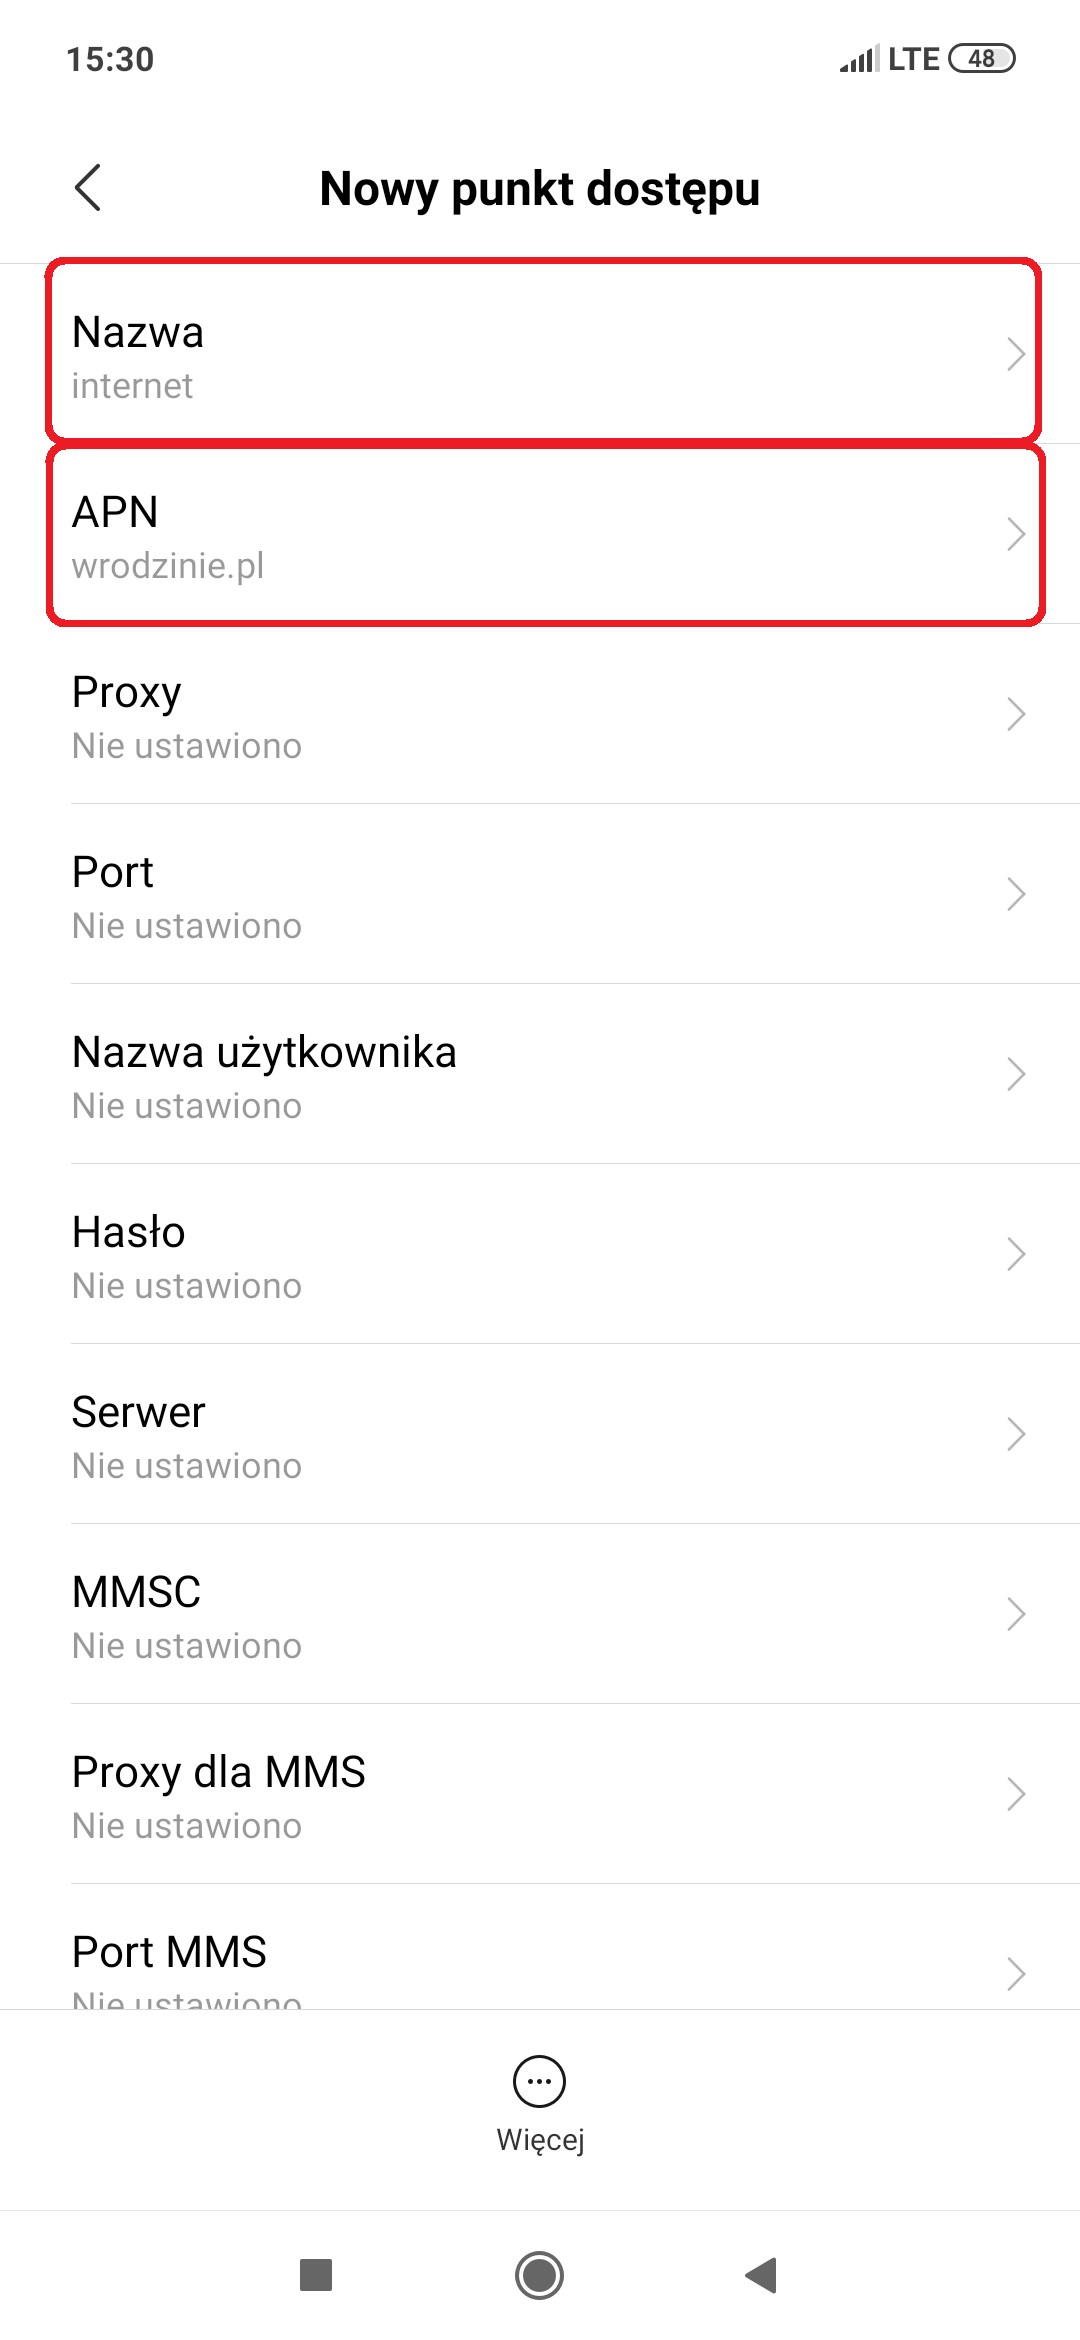 Jako nazwa powinno być wpisane: Internet, a APN: wrodzinie.pl